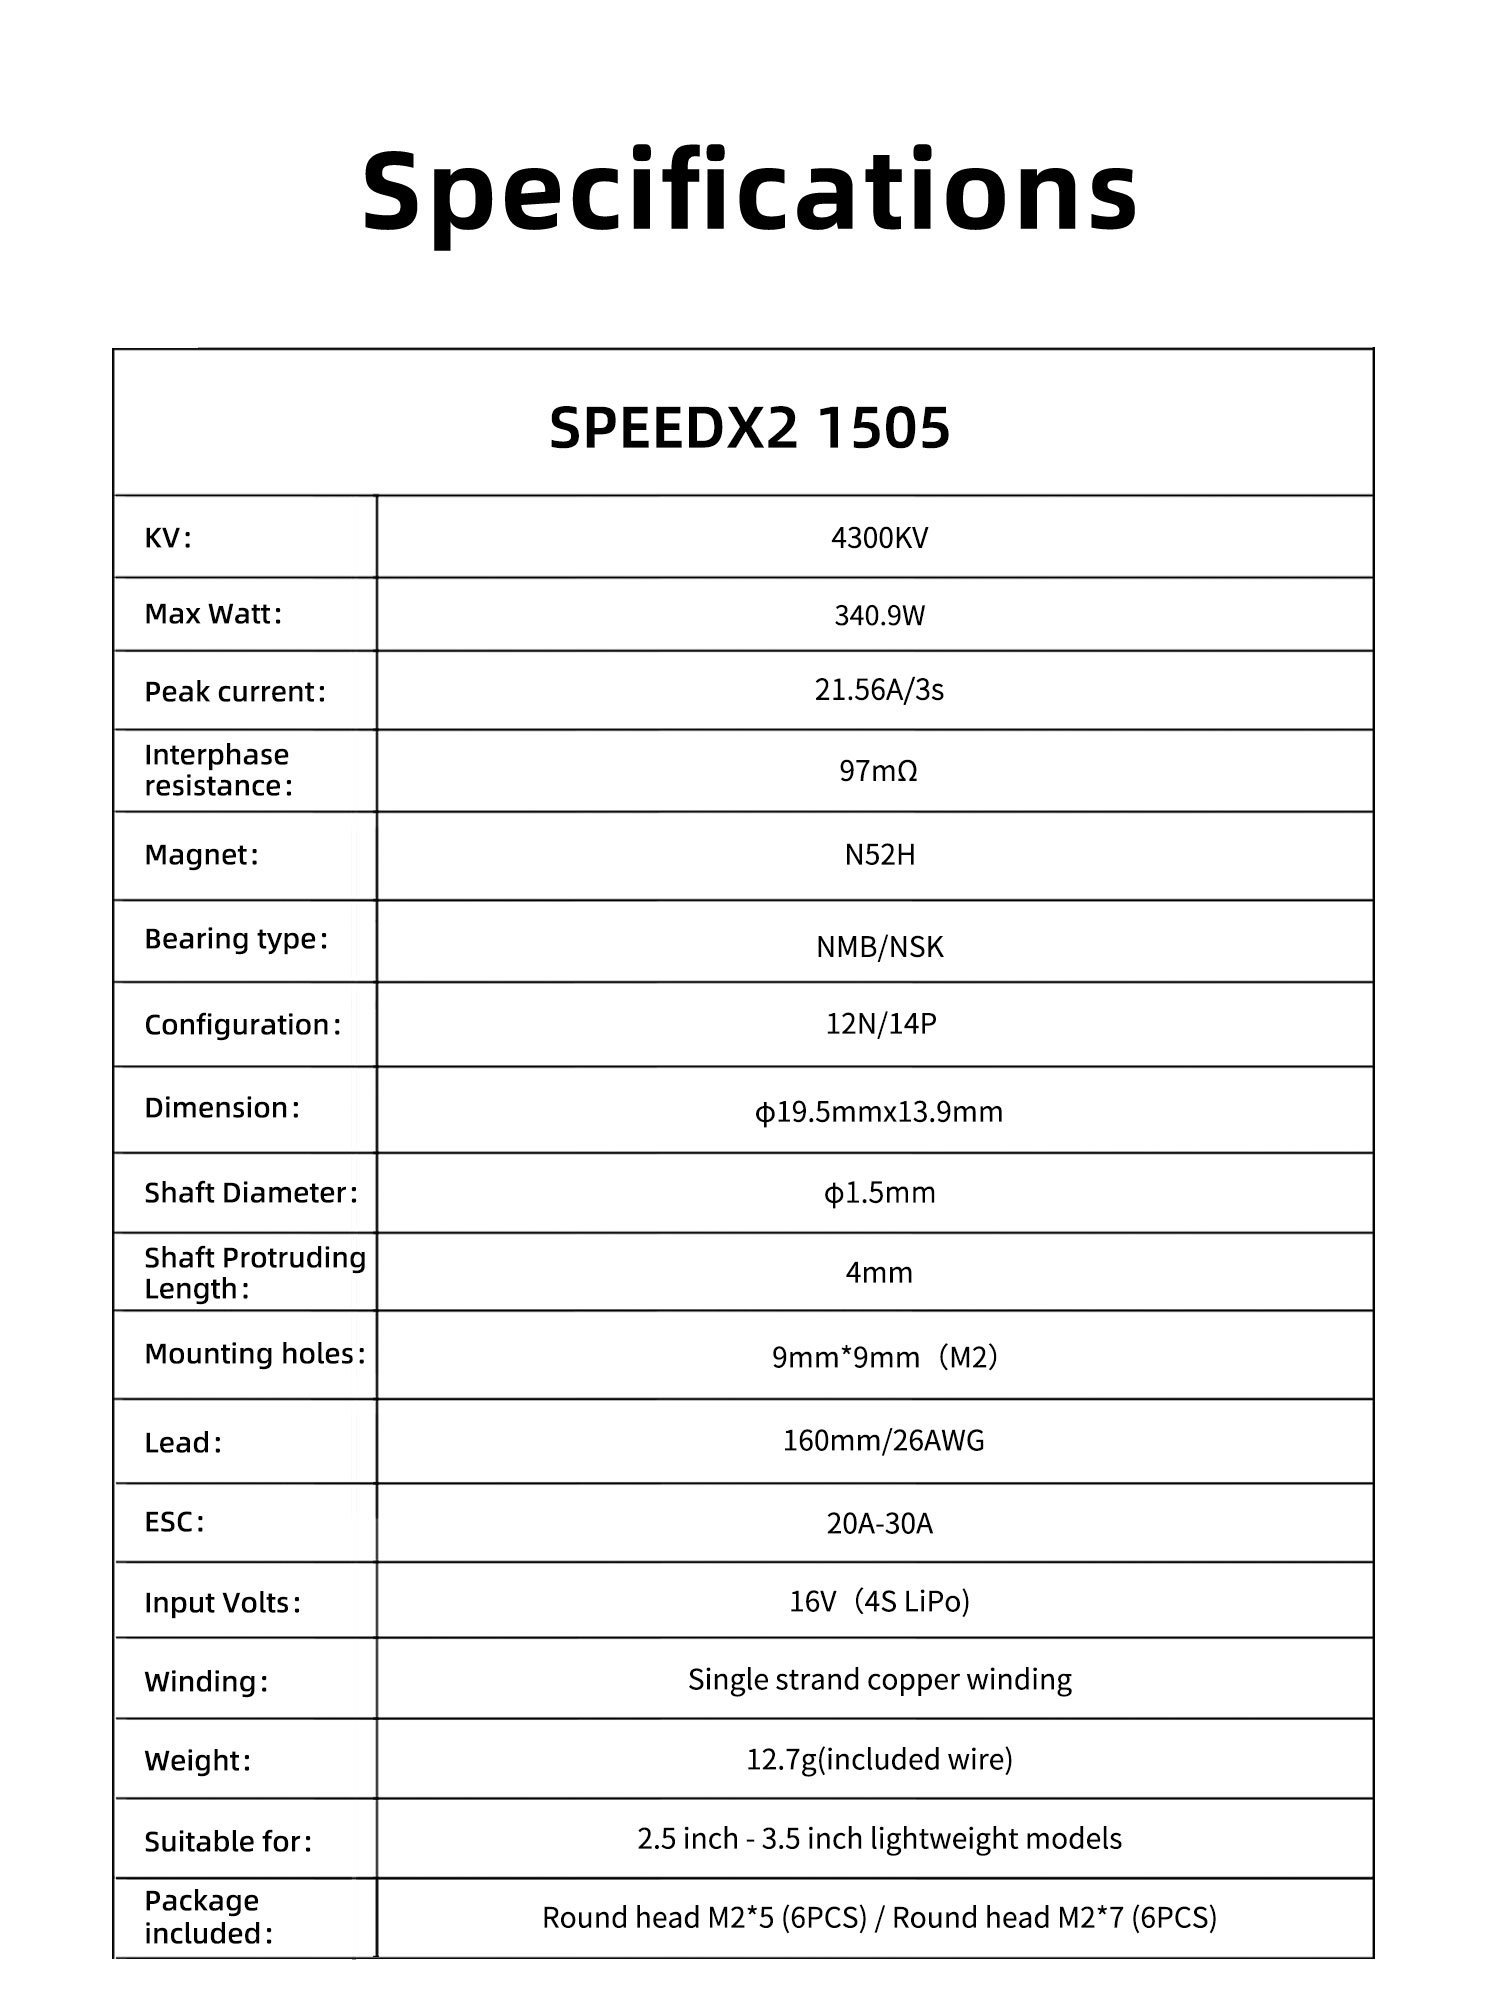 GEPRC SPEEDX2 1505 4300KV Motor